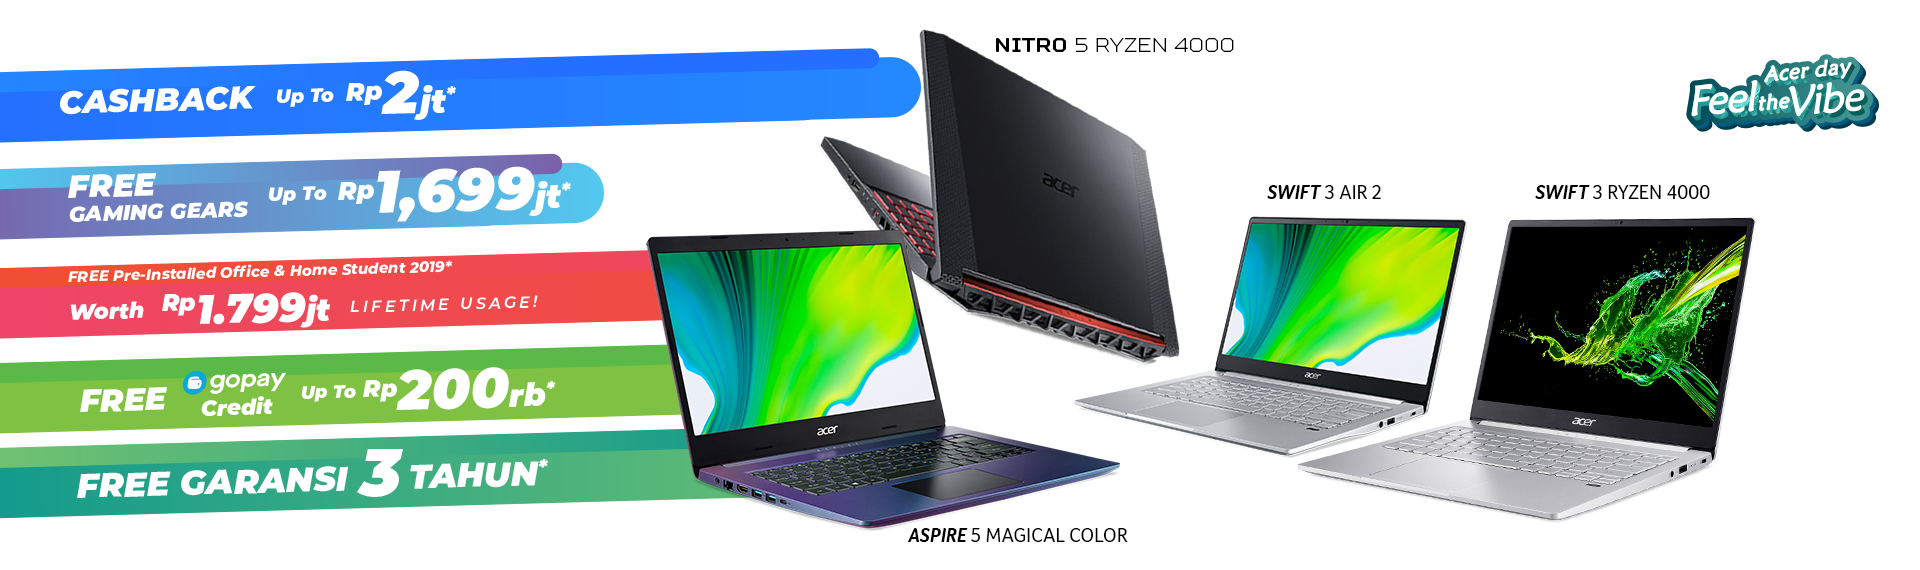 Acer Day 2020, Bisa Produktif Terus Semua Pasti Dapat Hadiah!